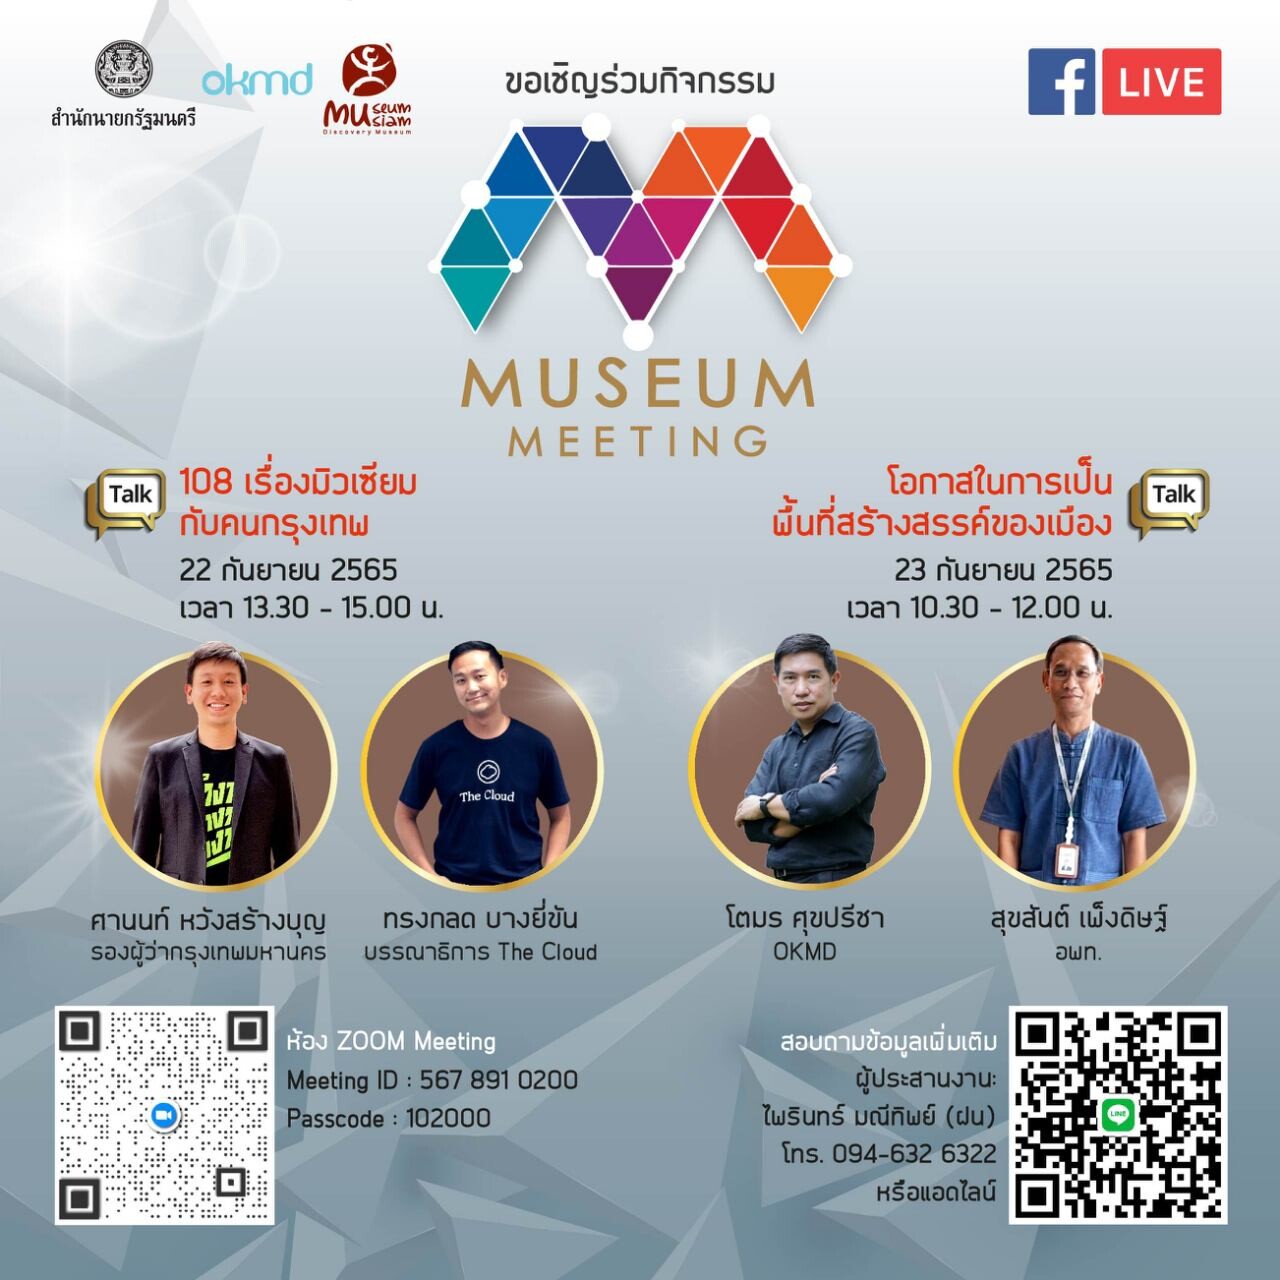 มิวเซียมสยาม ชวนเปิดมุมมองในงานเสวนาออนไลน์ Museum Meeting 2022 "ร่วมสร้างสรรค์ให้พิพิธภัณฑ์สนุกกว่าที่คิด" ผ่าน Museum Thailand Platform